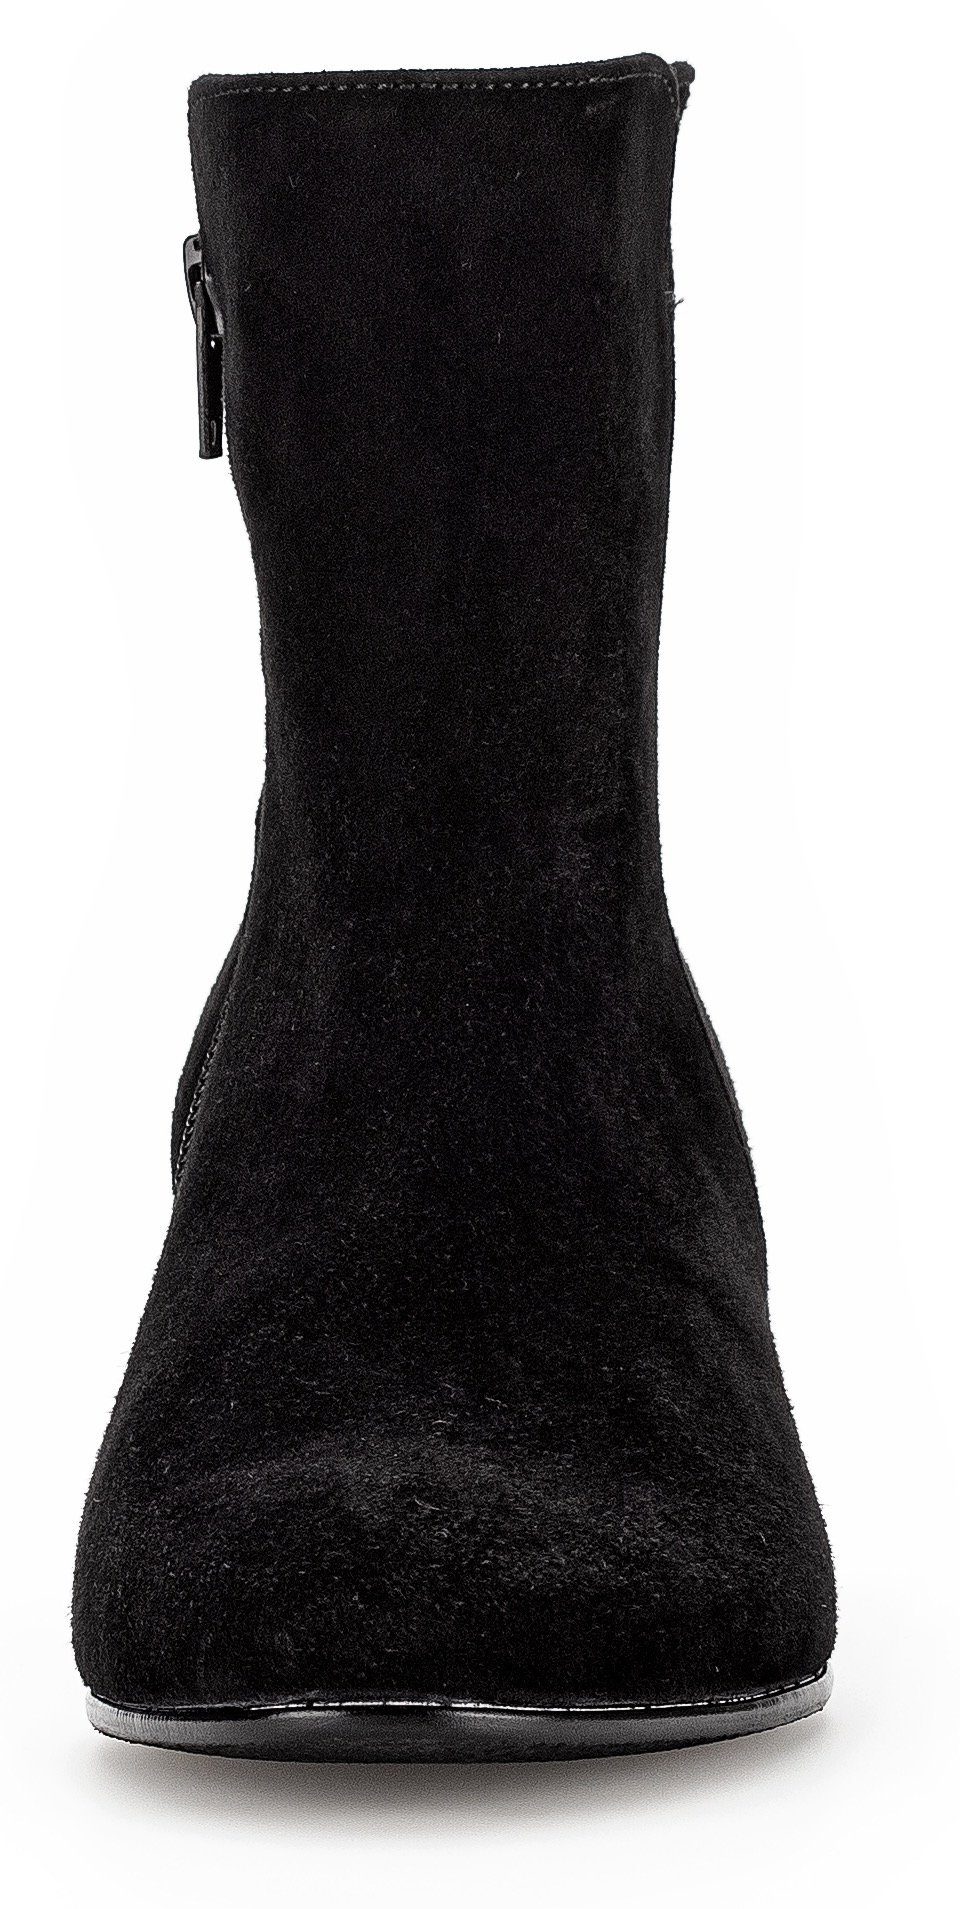 Best Stiefelette Fitting-Ausstattung schwarz mit Gabor